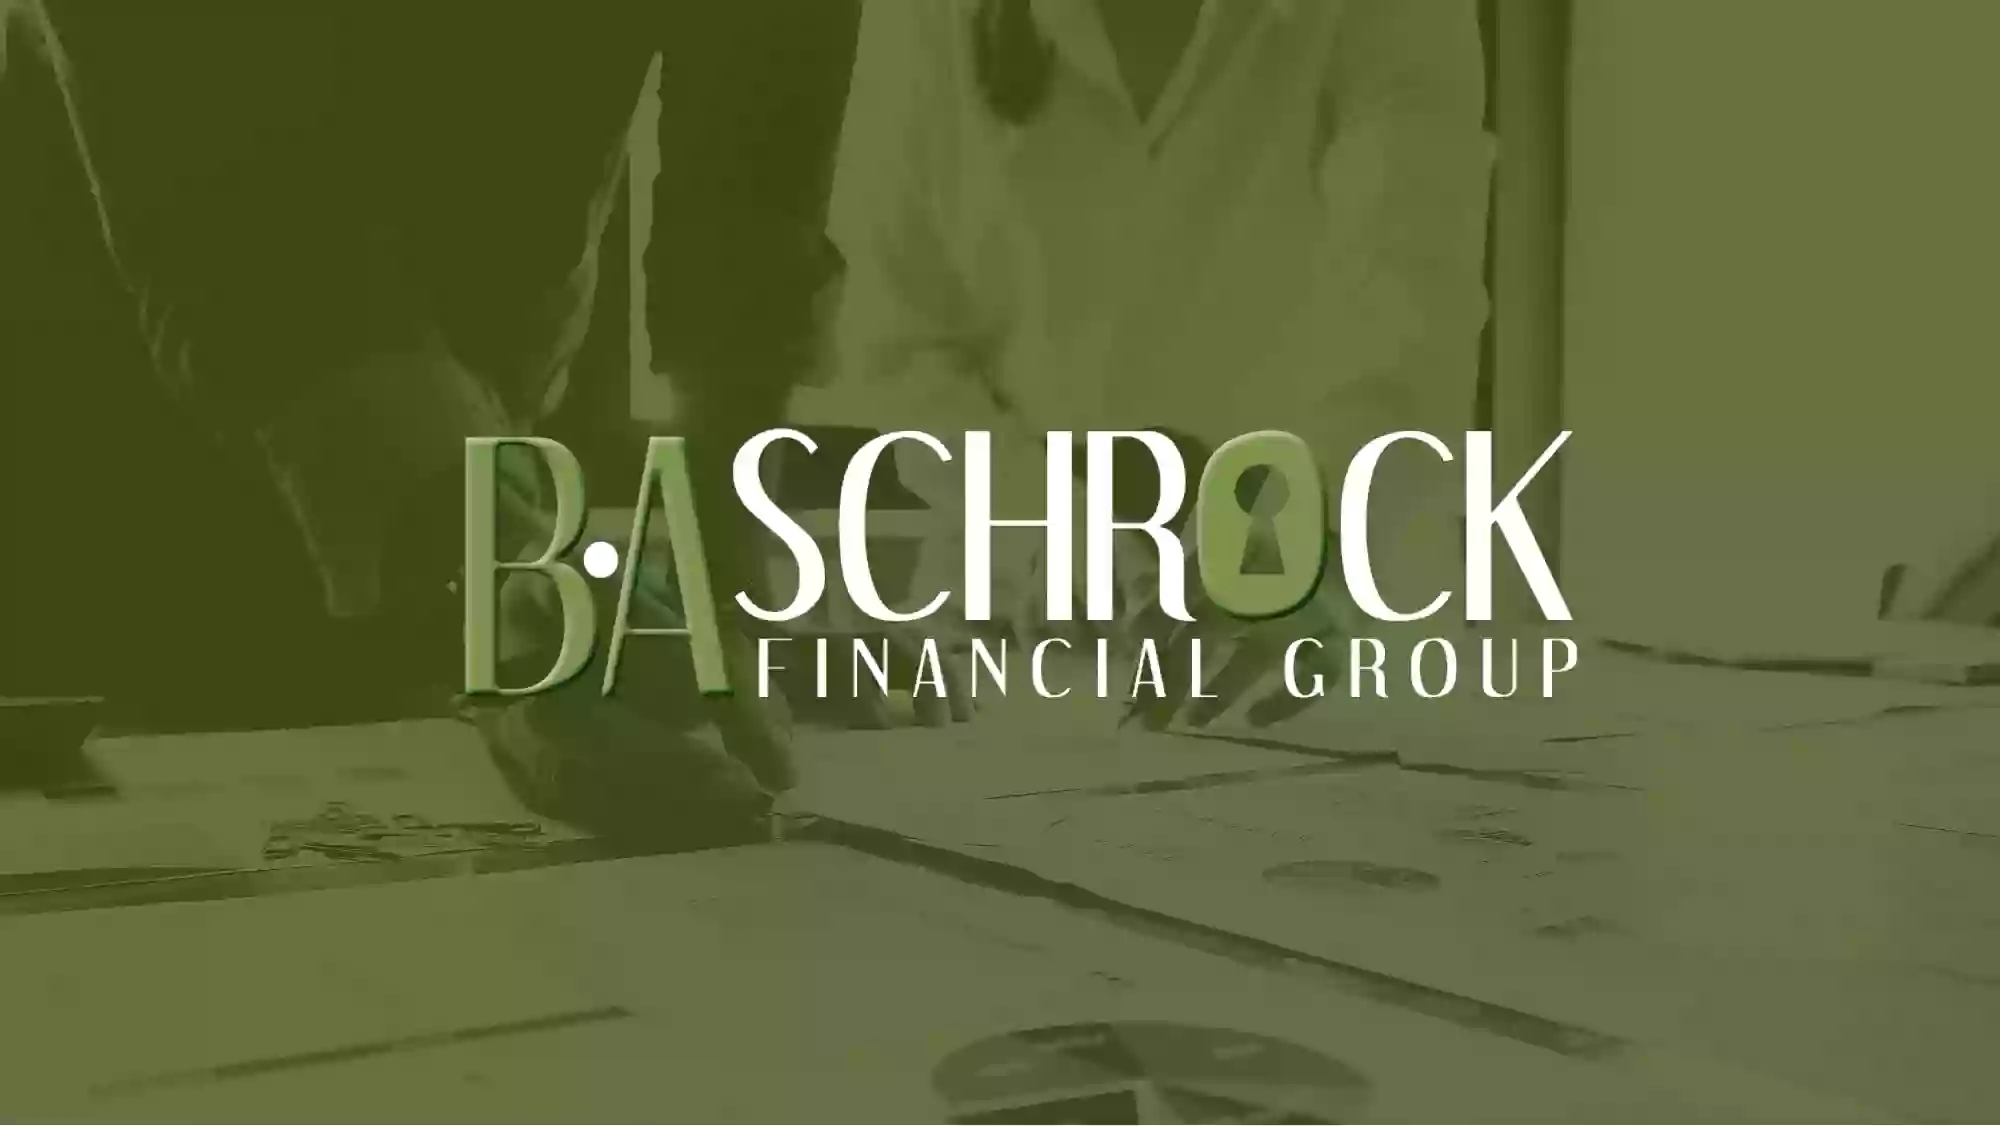 B.A. Schrock Financial Group